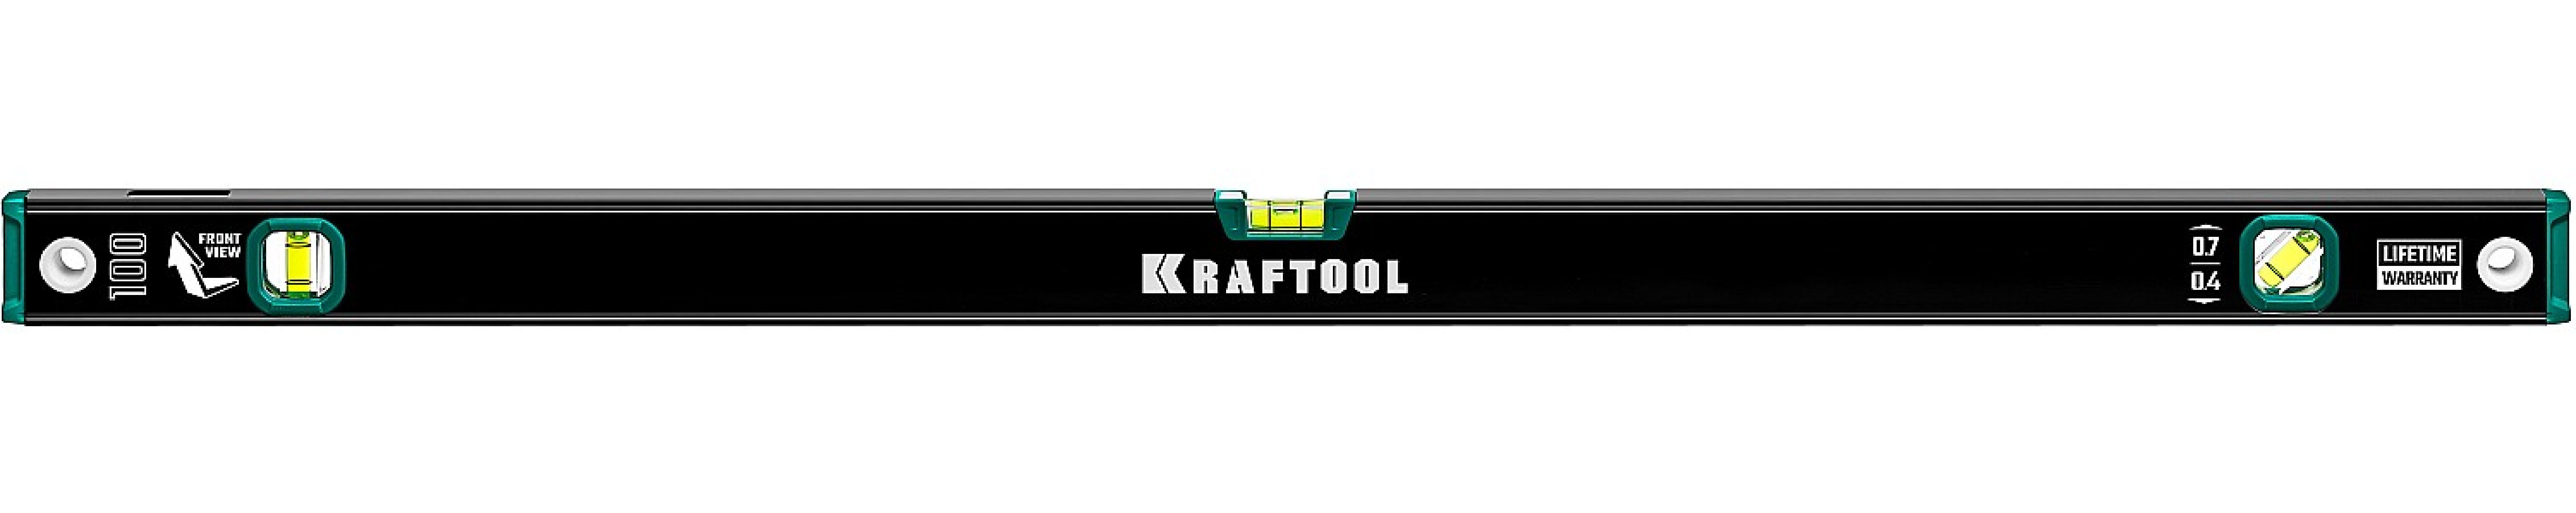  KRAFTOOL    1000  (34781-100)